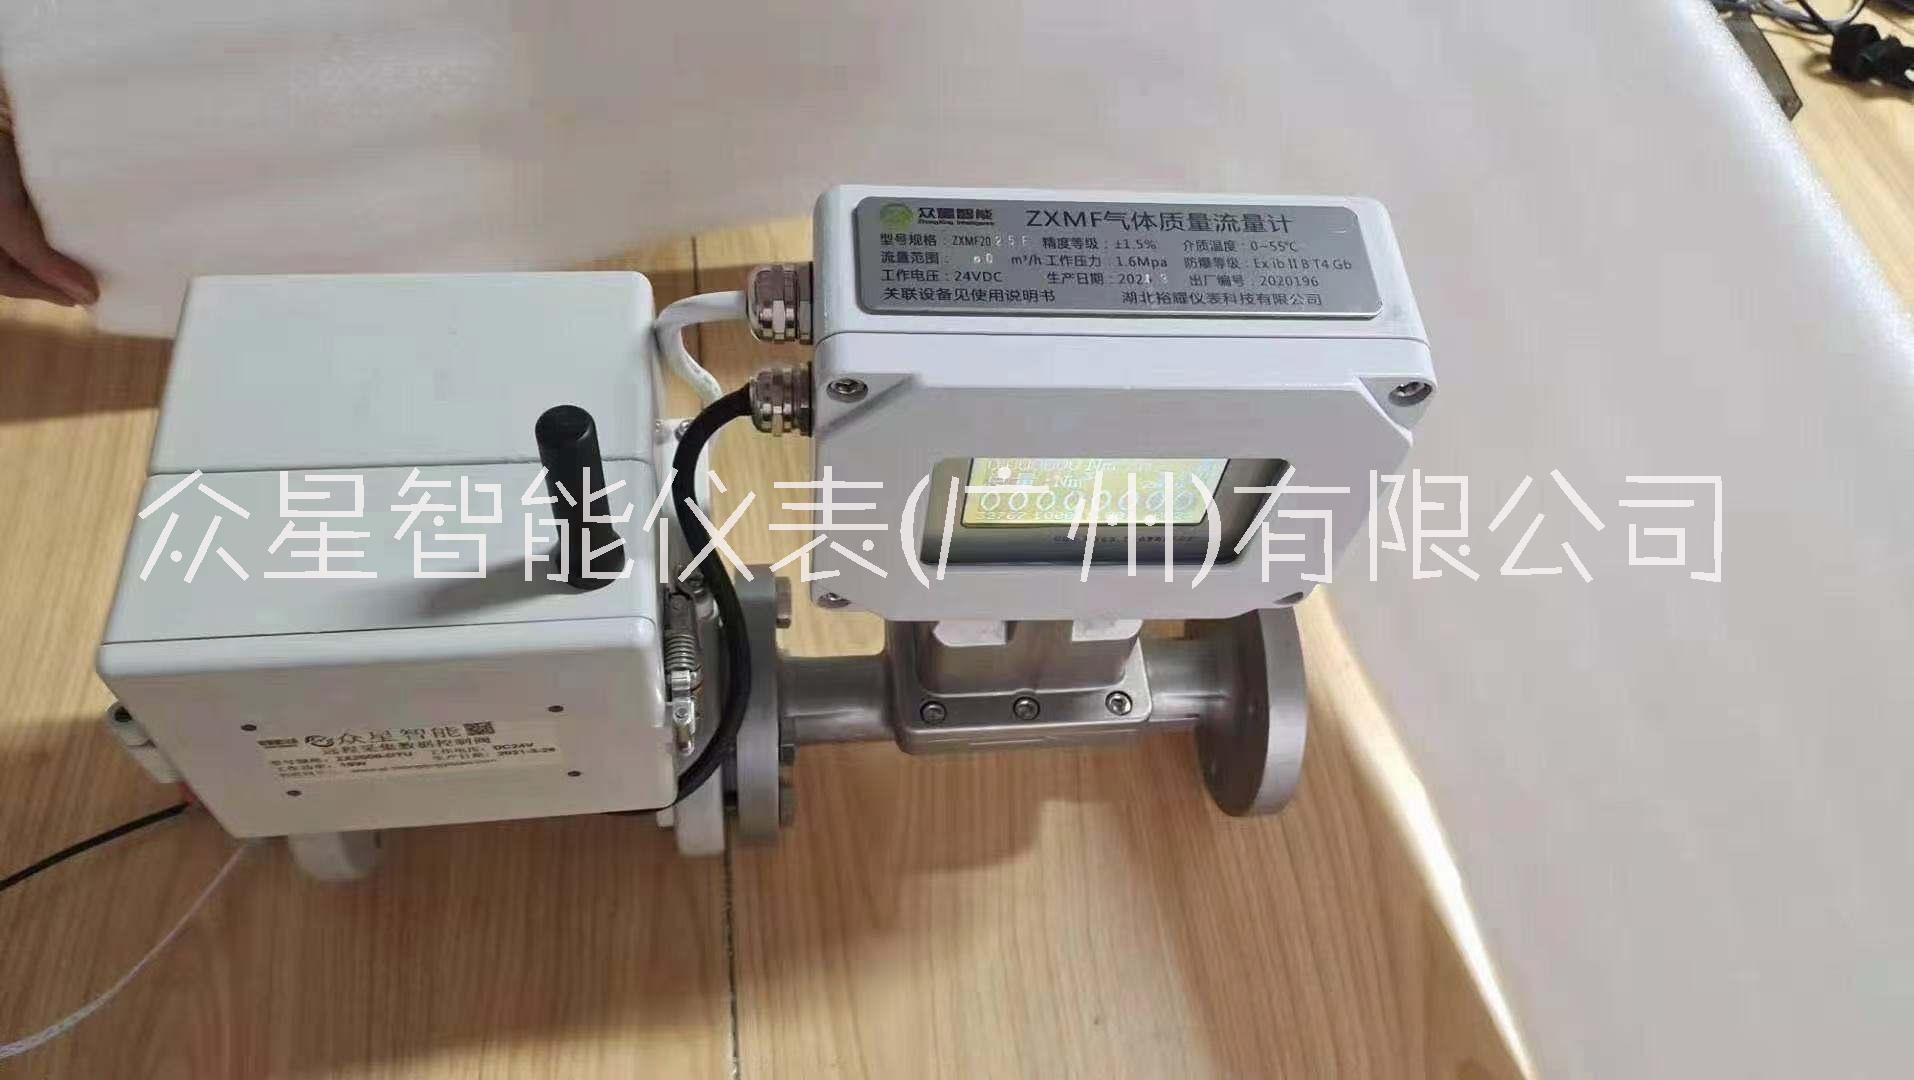 气体流量计厂家报价、广州气体流量计公司电话图片